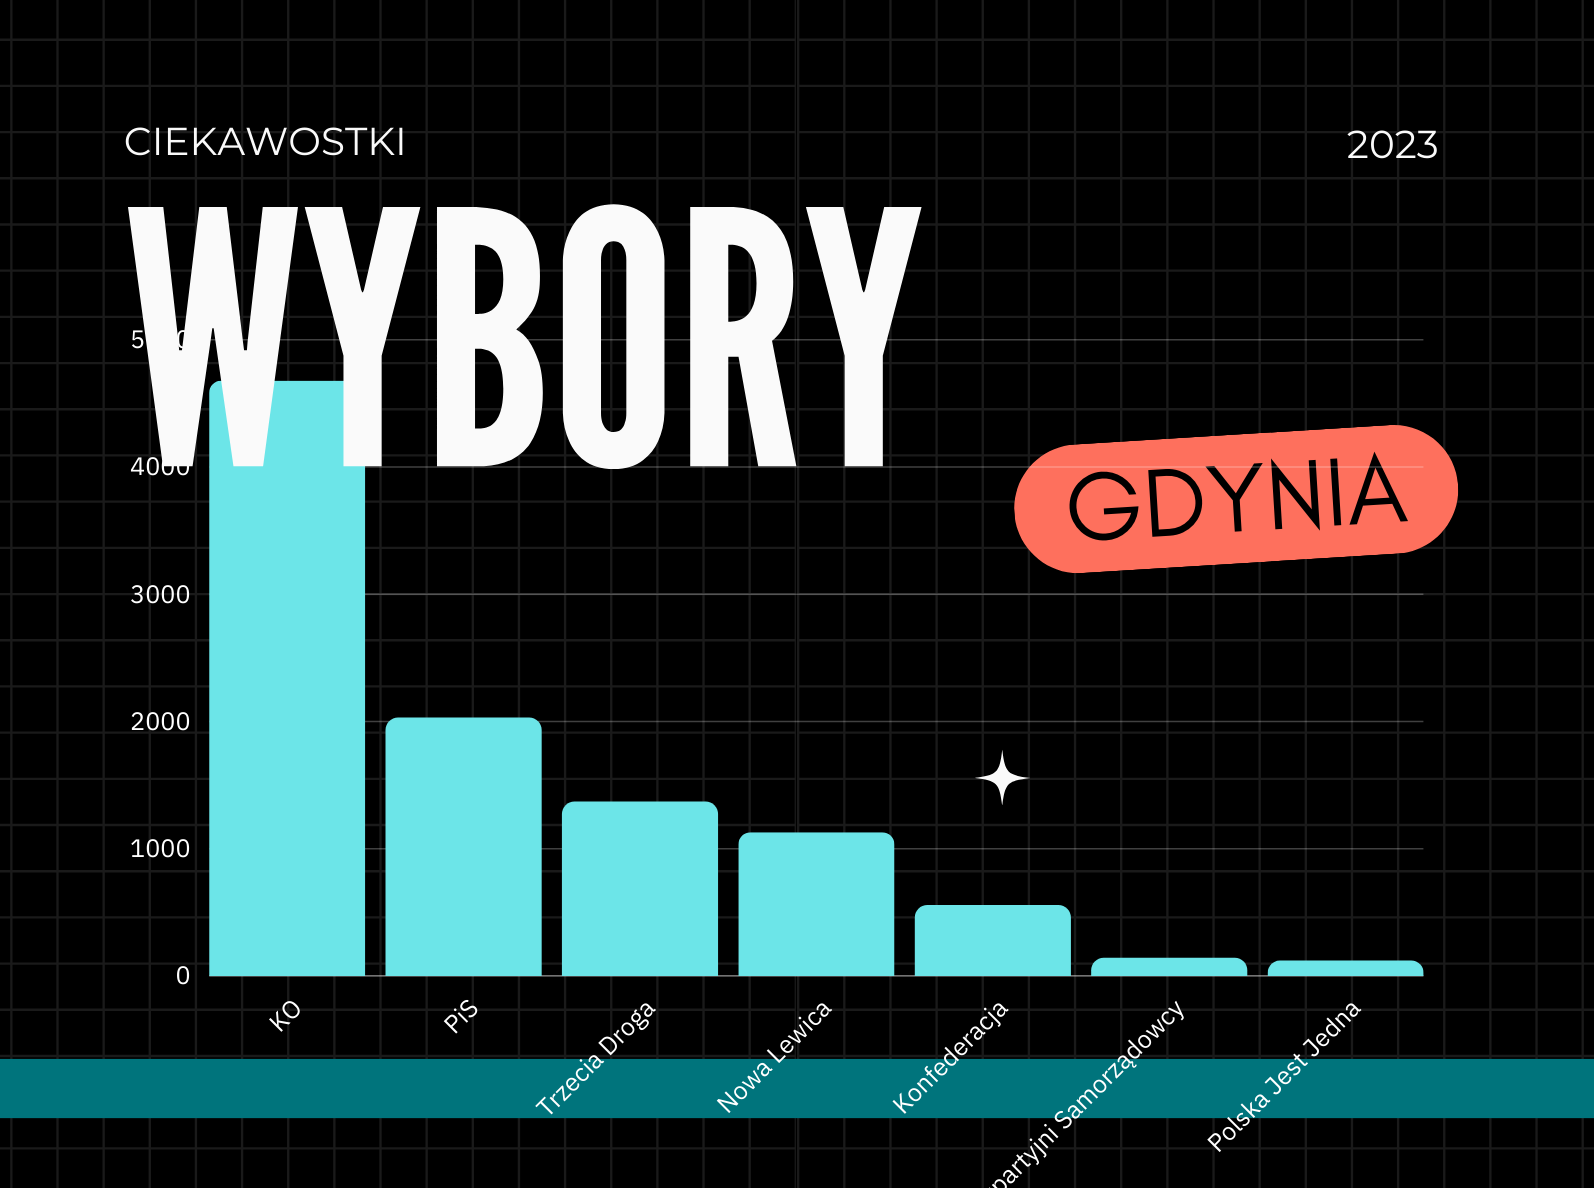 wybory 2023 Gdynia - ciekawostki - wykres z wynikami według danych PKW